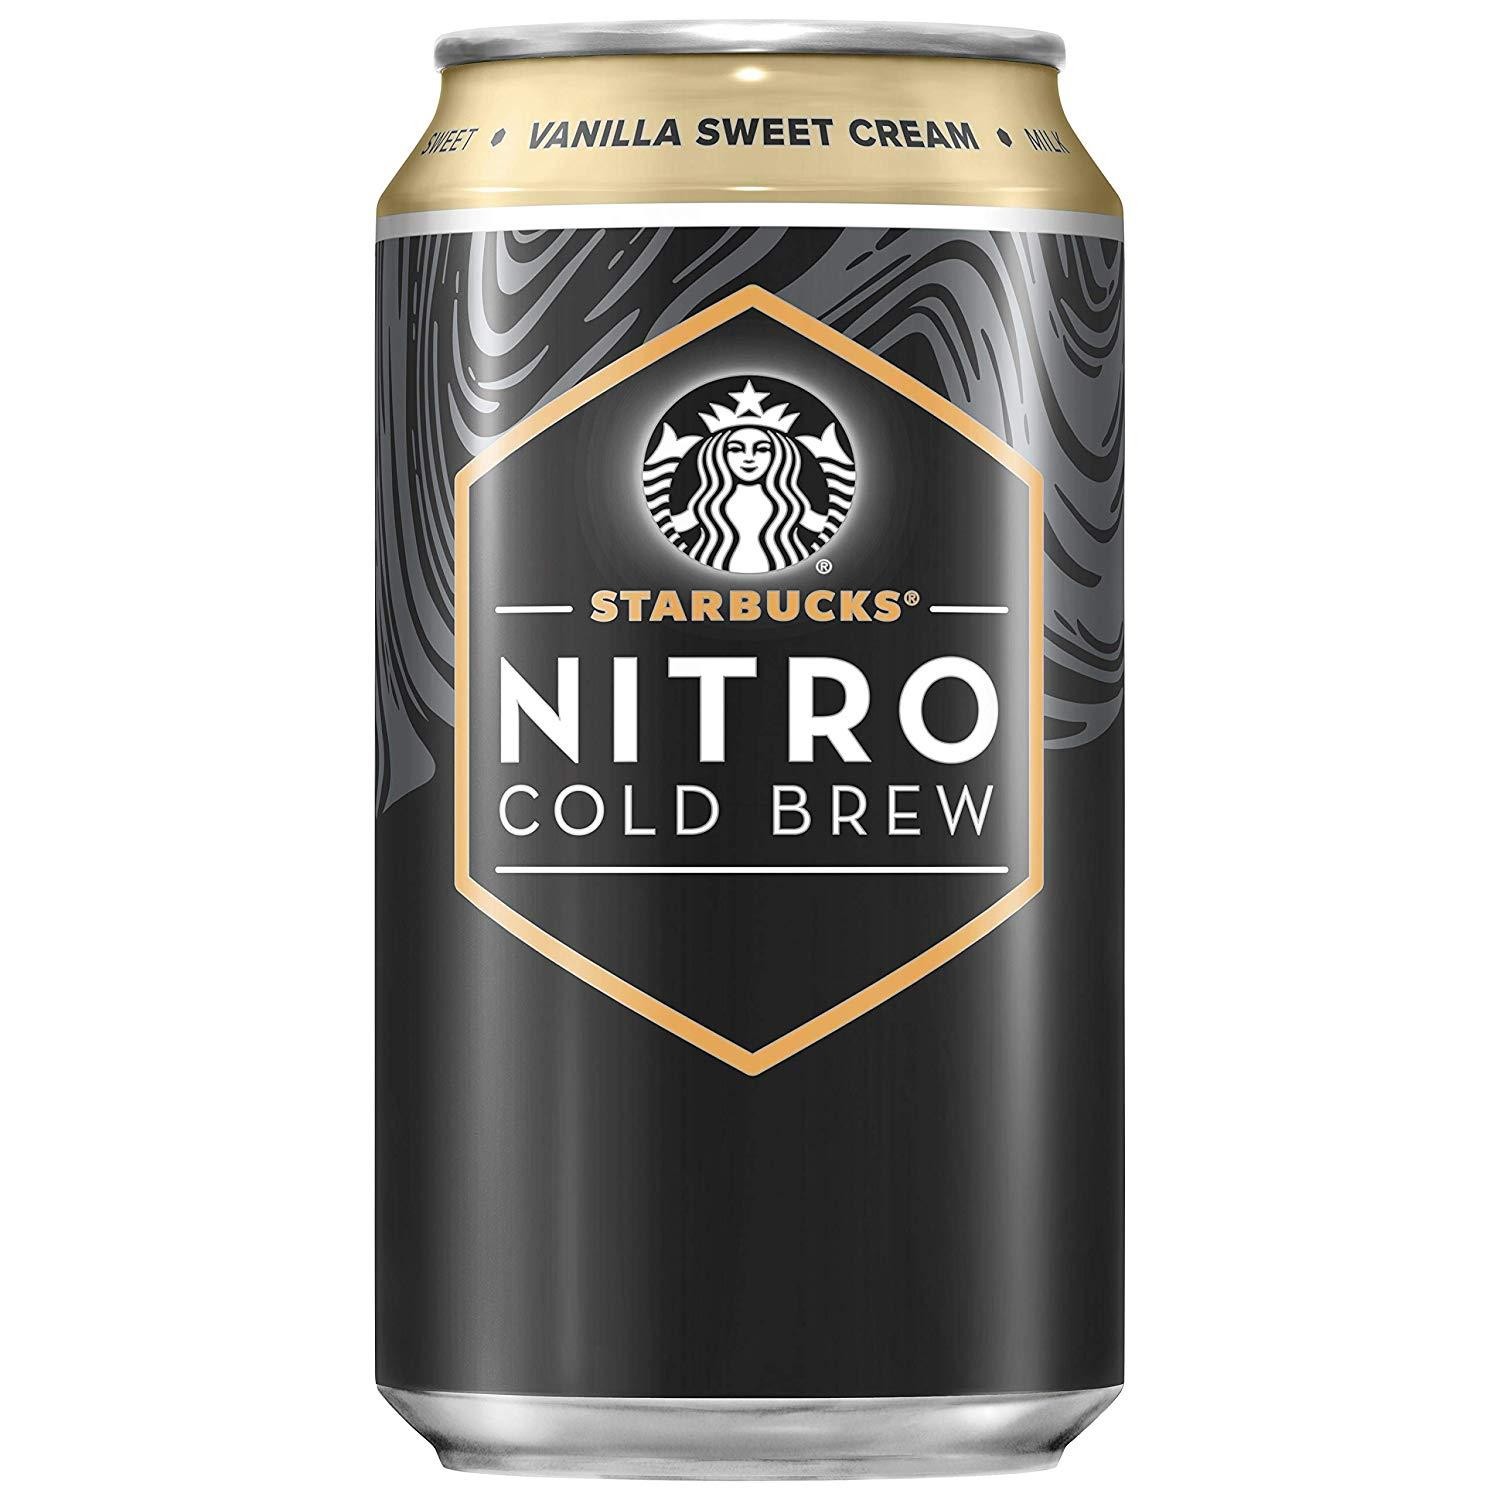 Starbucks Nitro Vanilla Sweet Cream